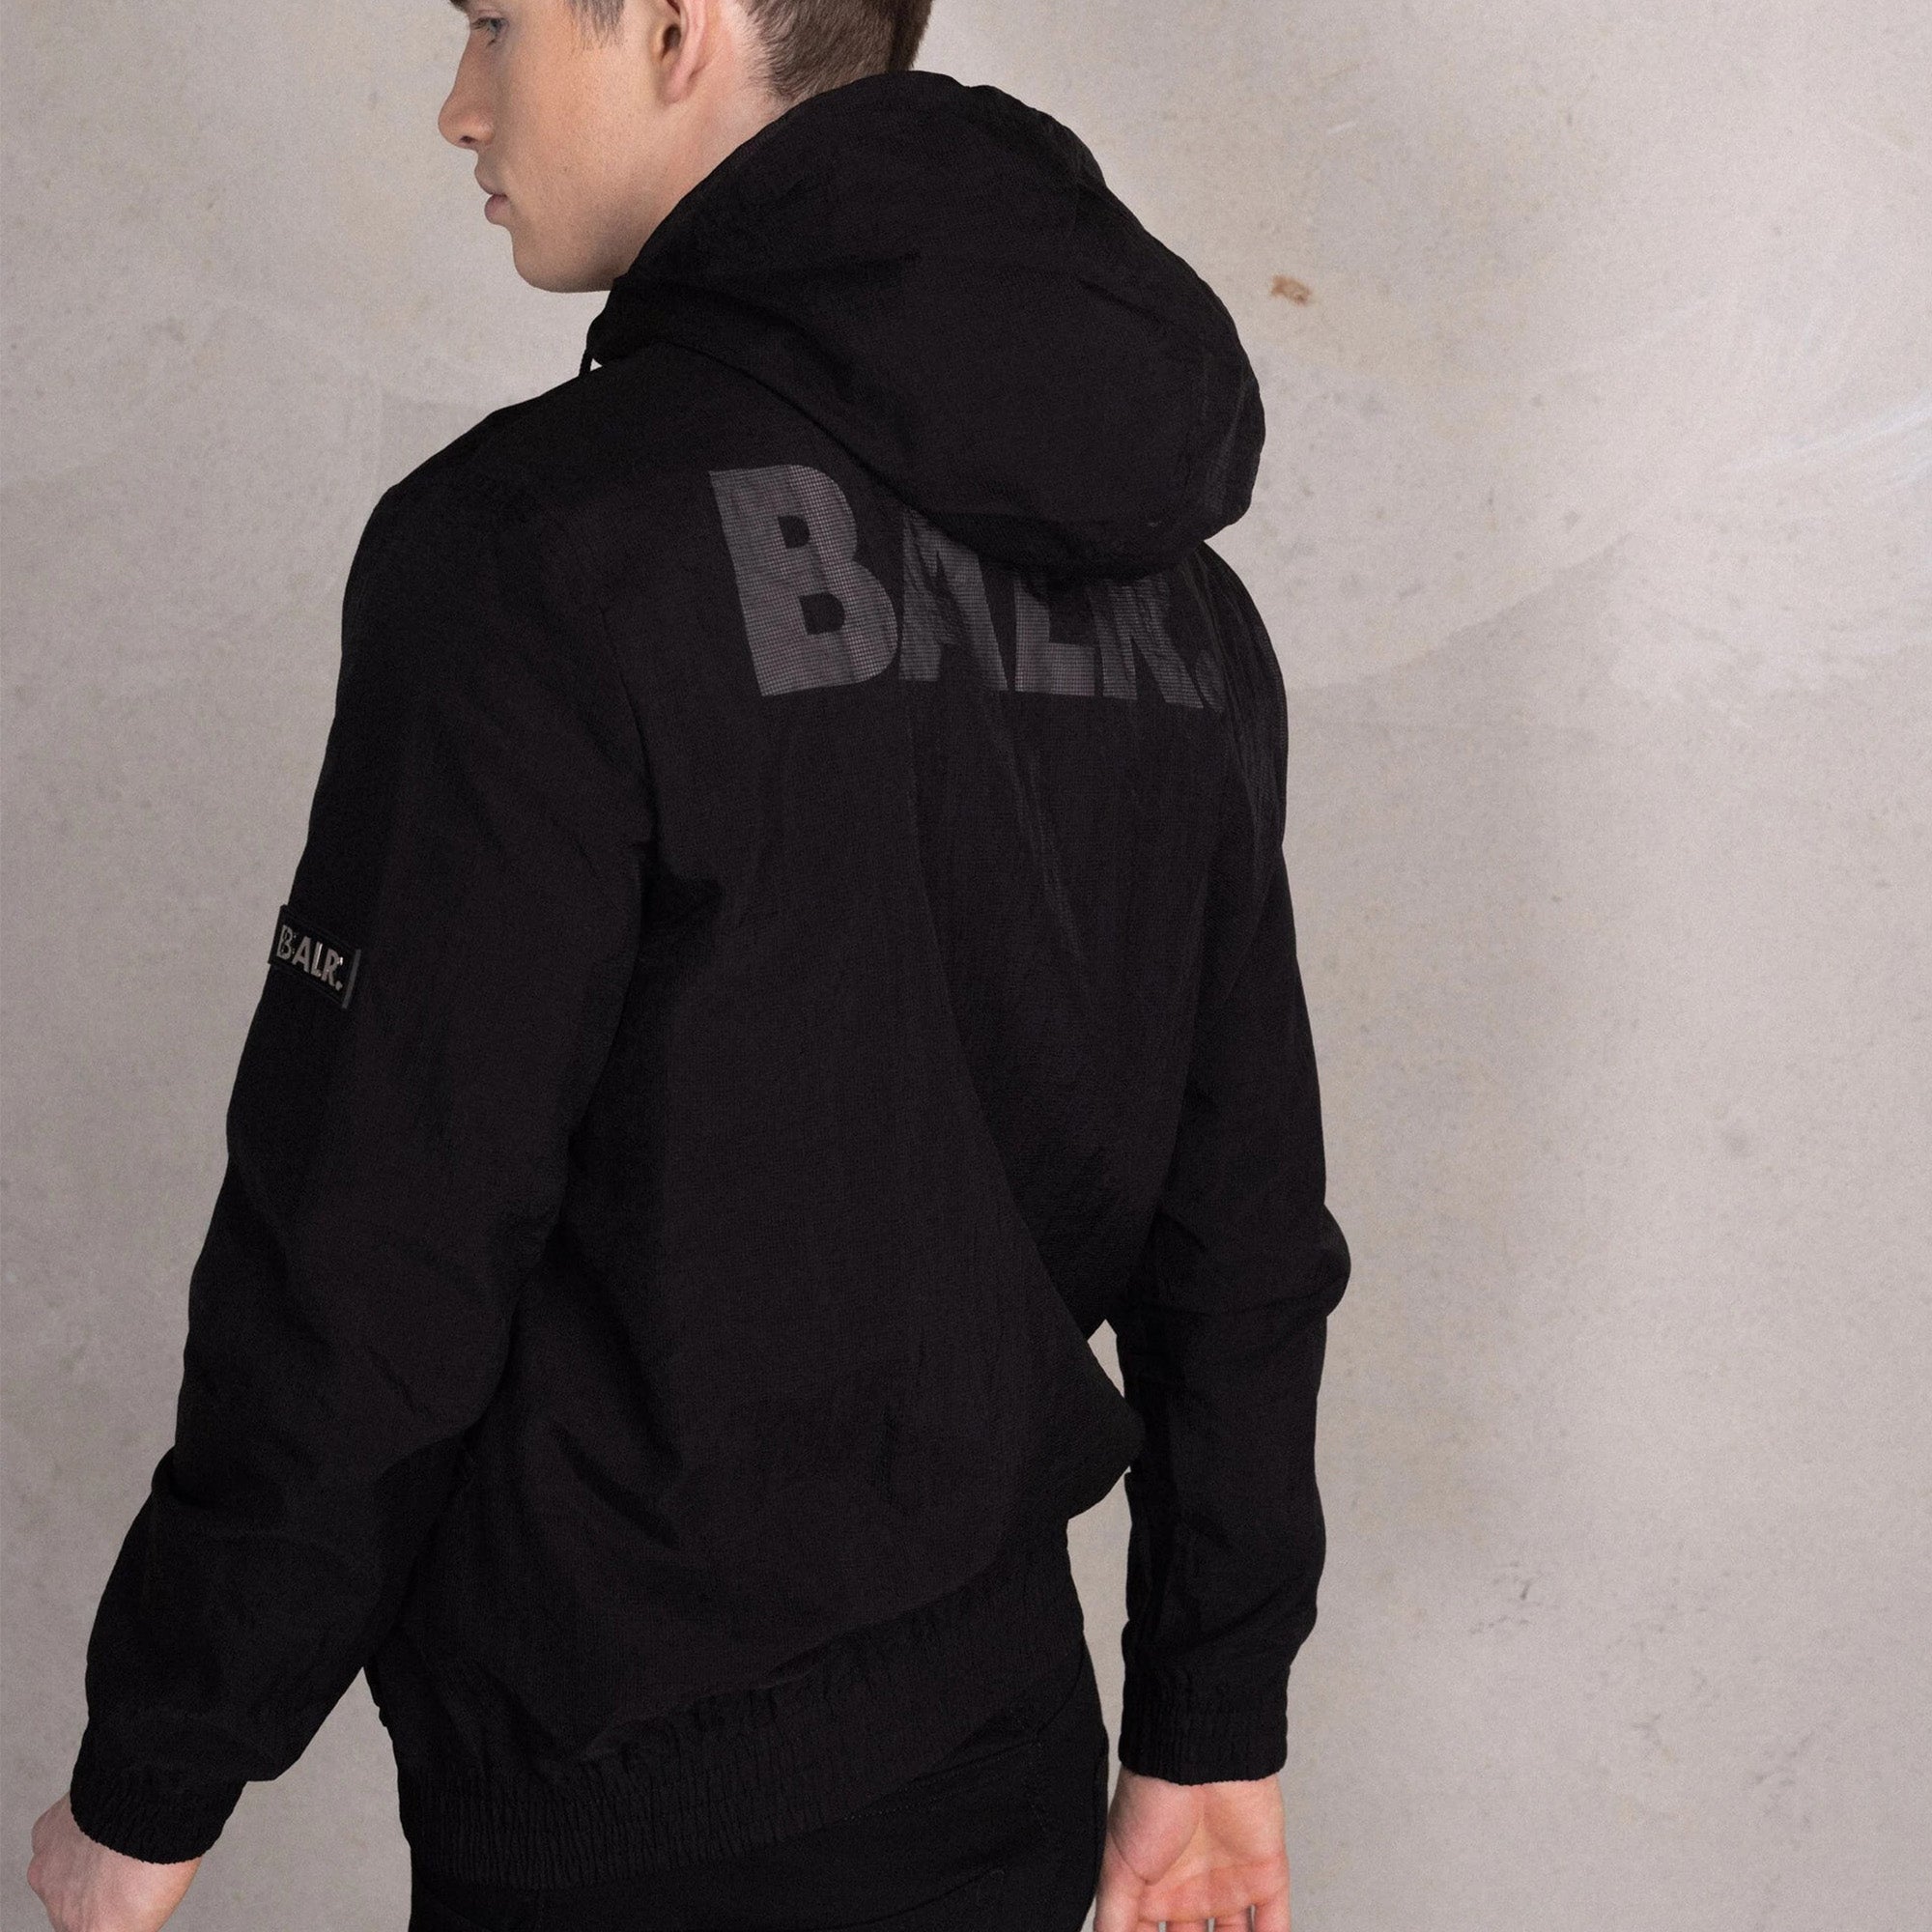 Balr River Regular Layer Black Jacket